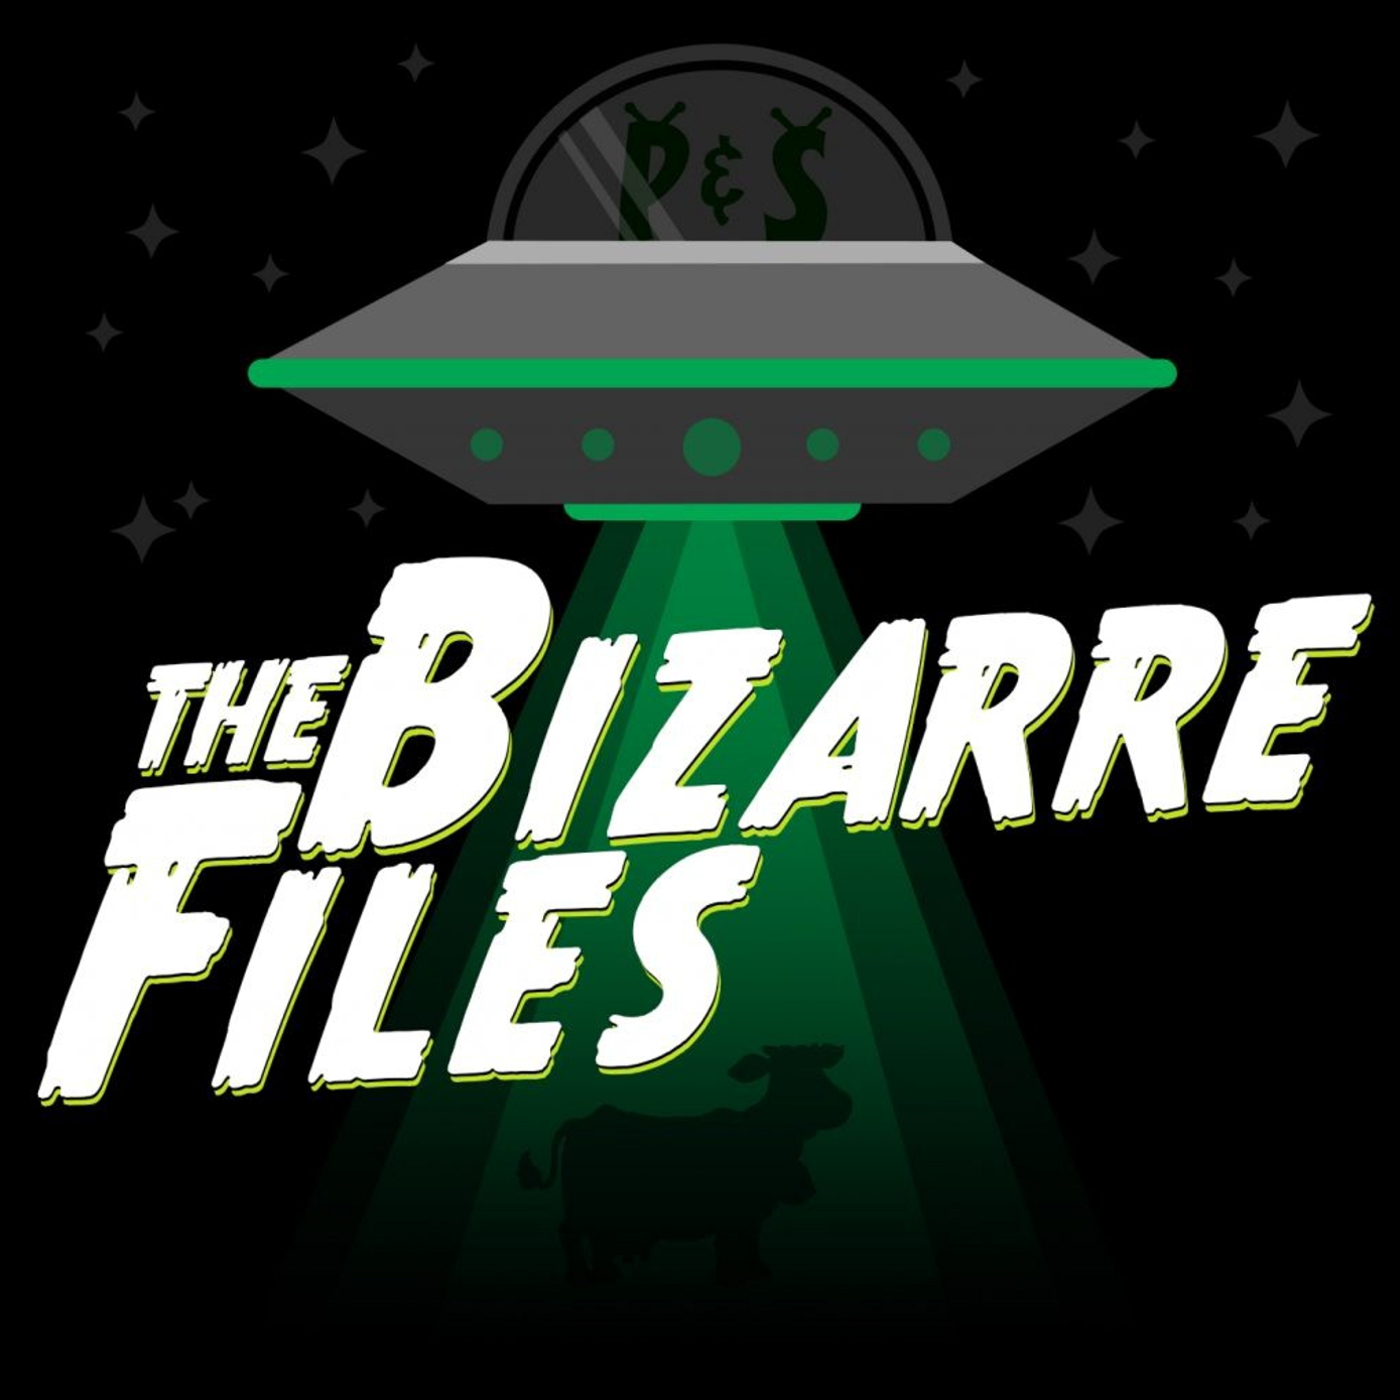 The Bizzare Files #1553